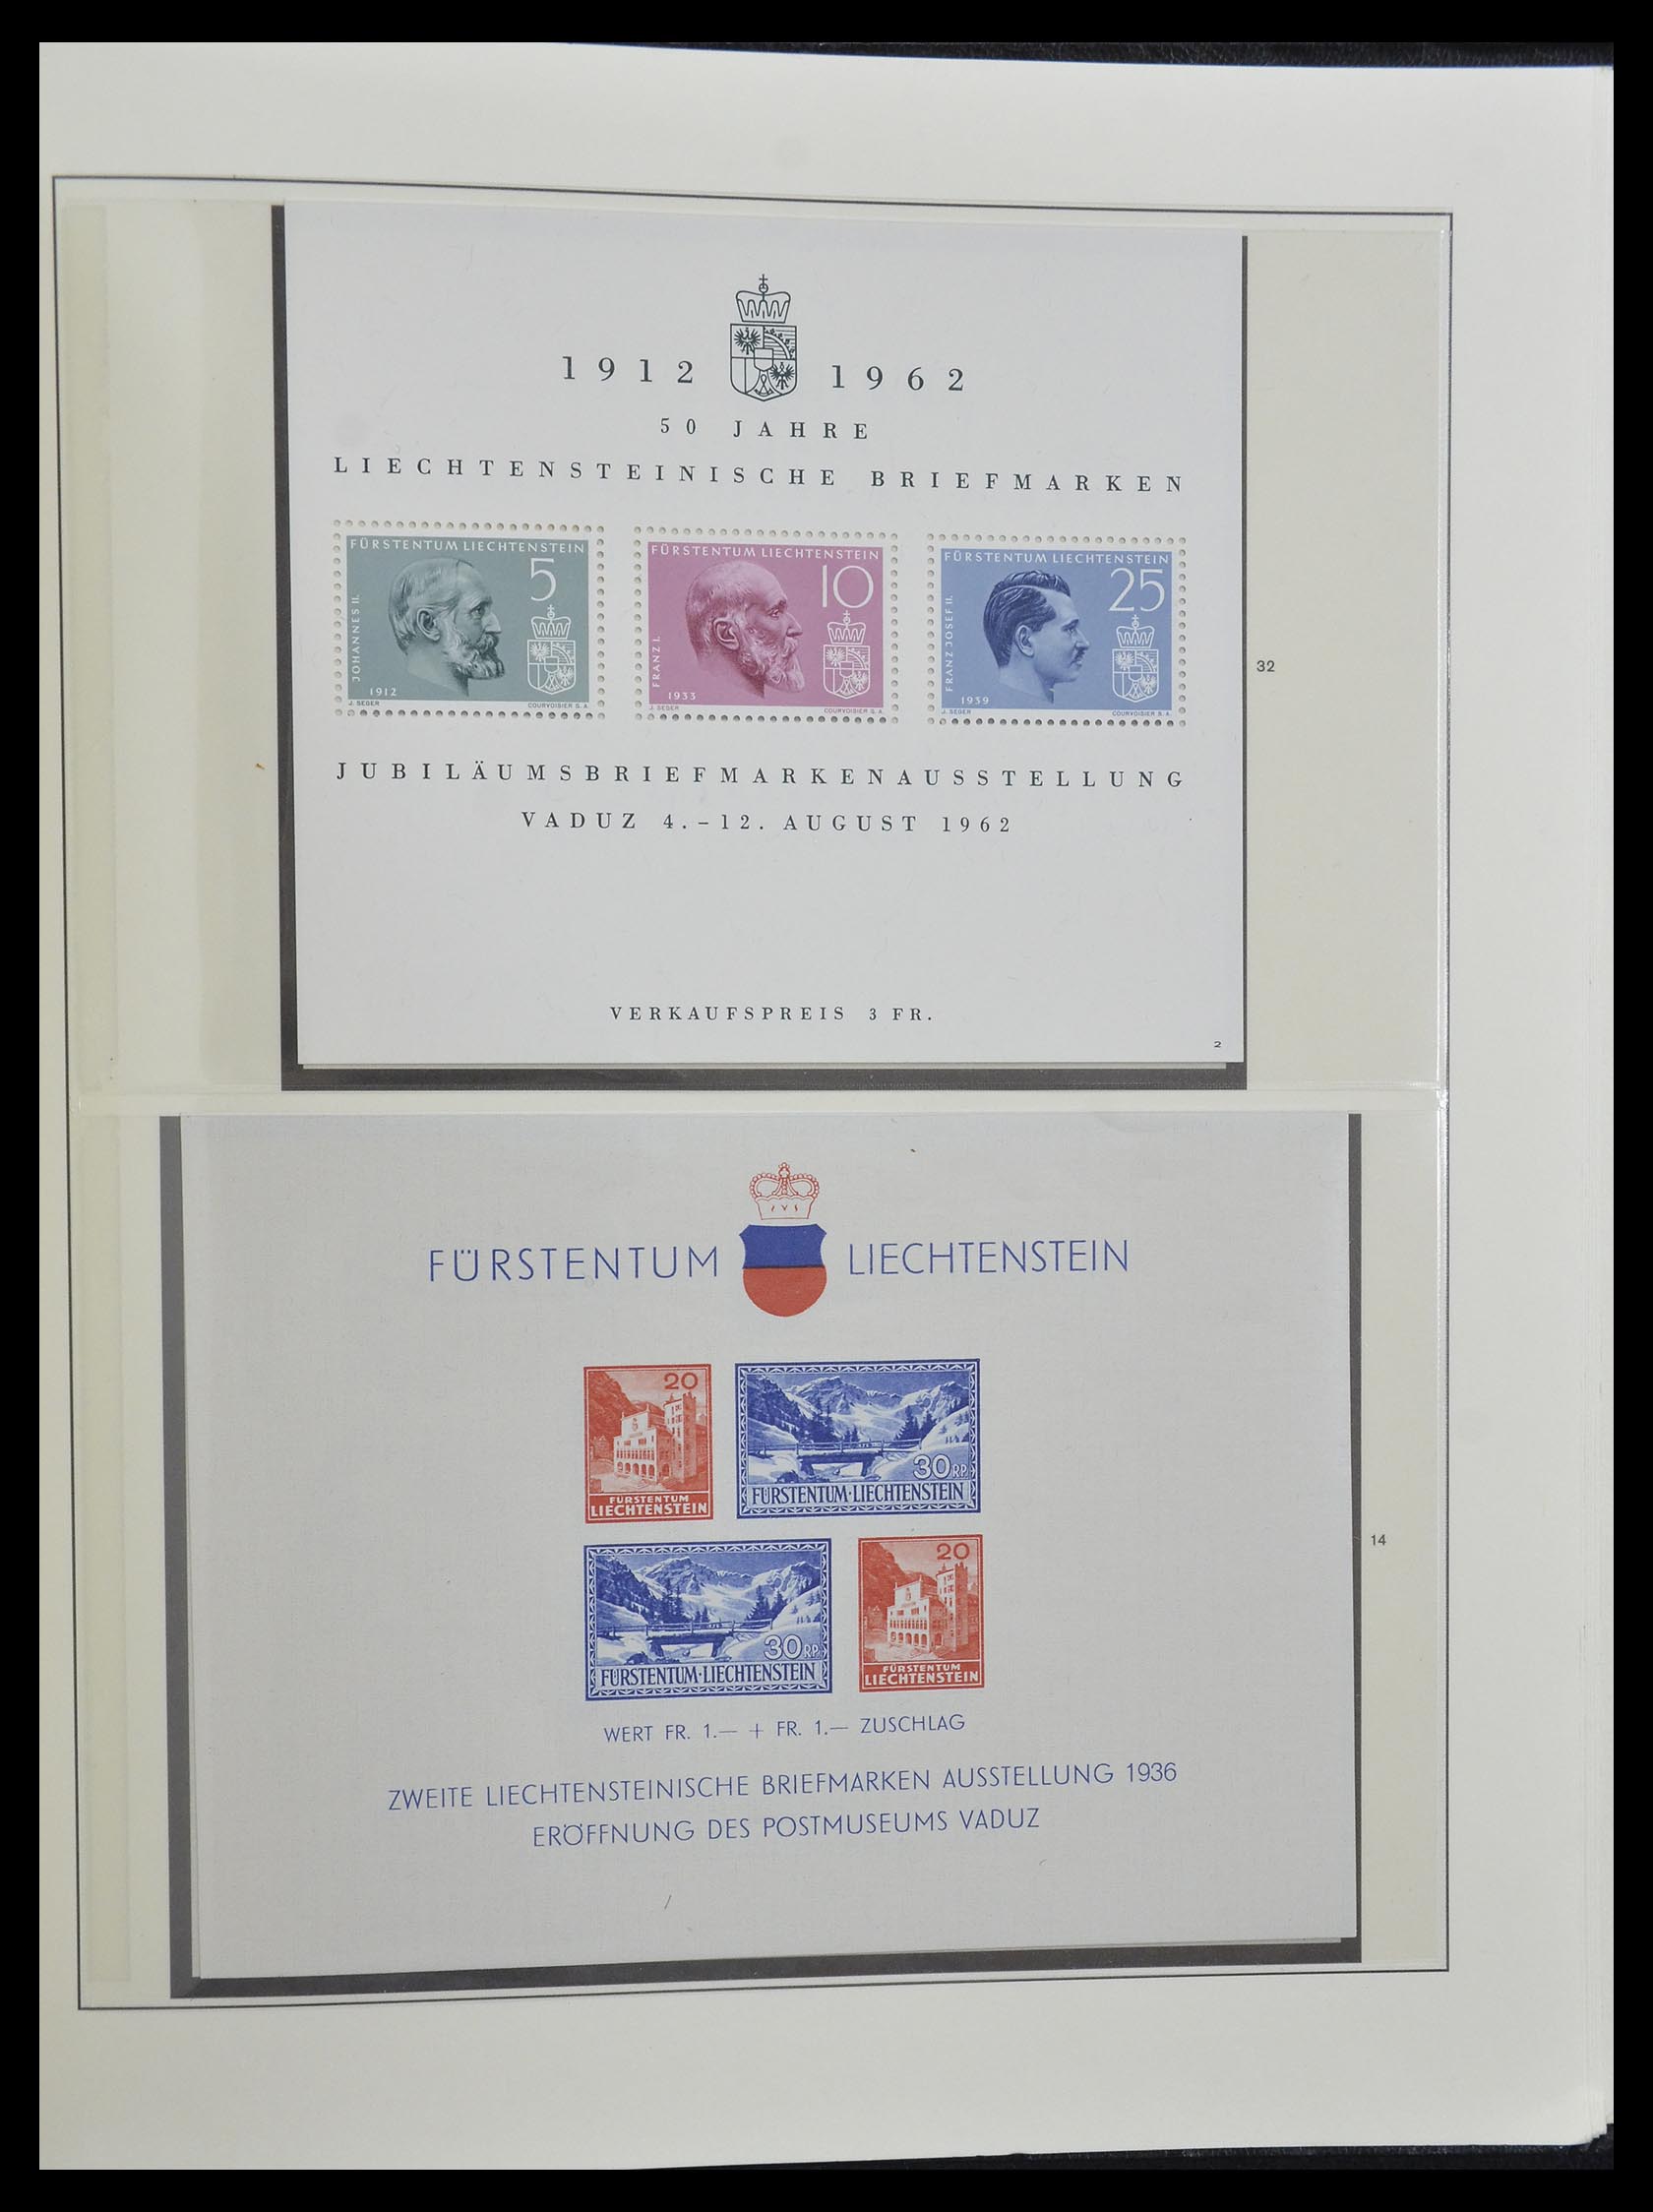 33140 051 - Stamp collection 33140 Liechtenstein 1912-1990.